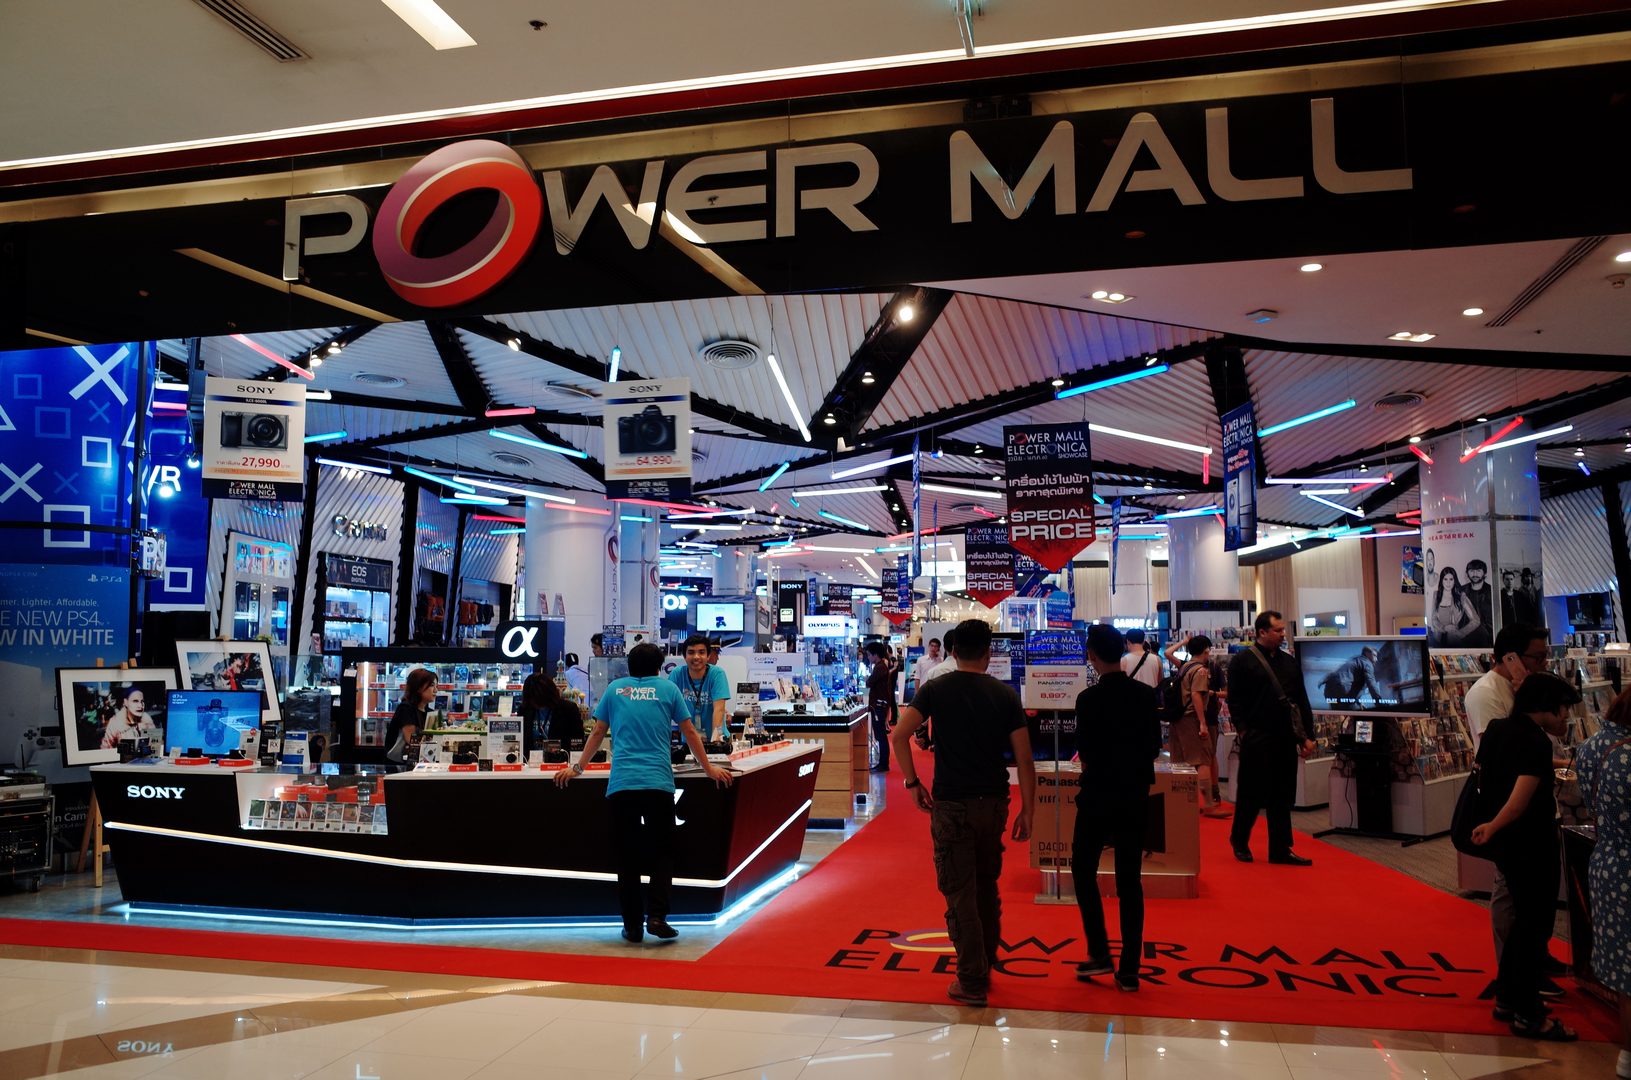 ส่องสินค้าสุดล้ำใน Power Mall Electronica Showcase คนรักเทคโนโลยีห้ามพลาด!